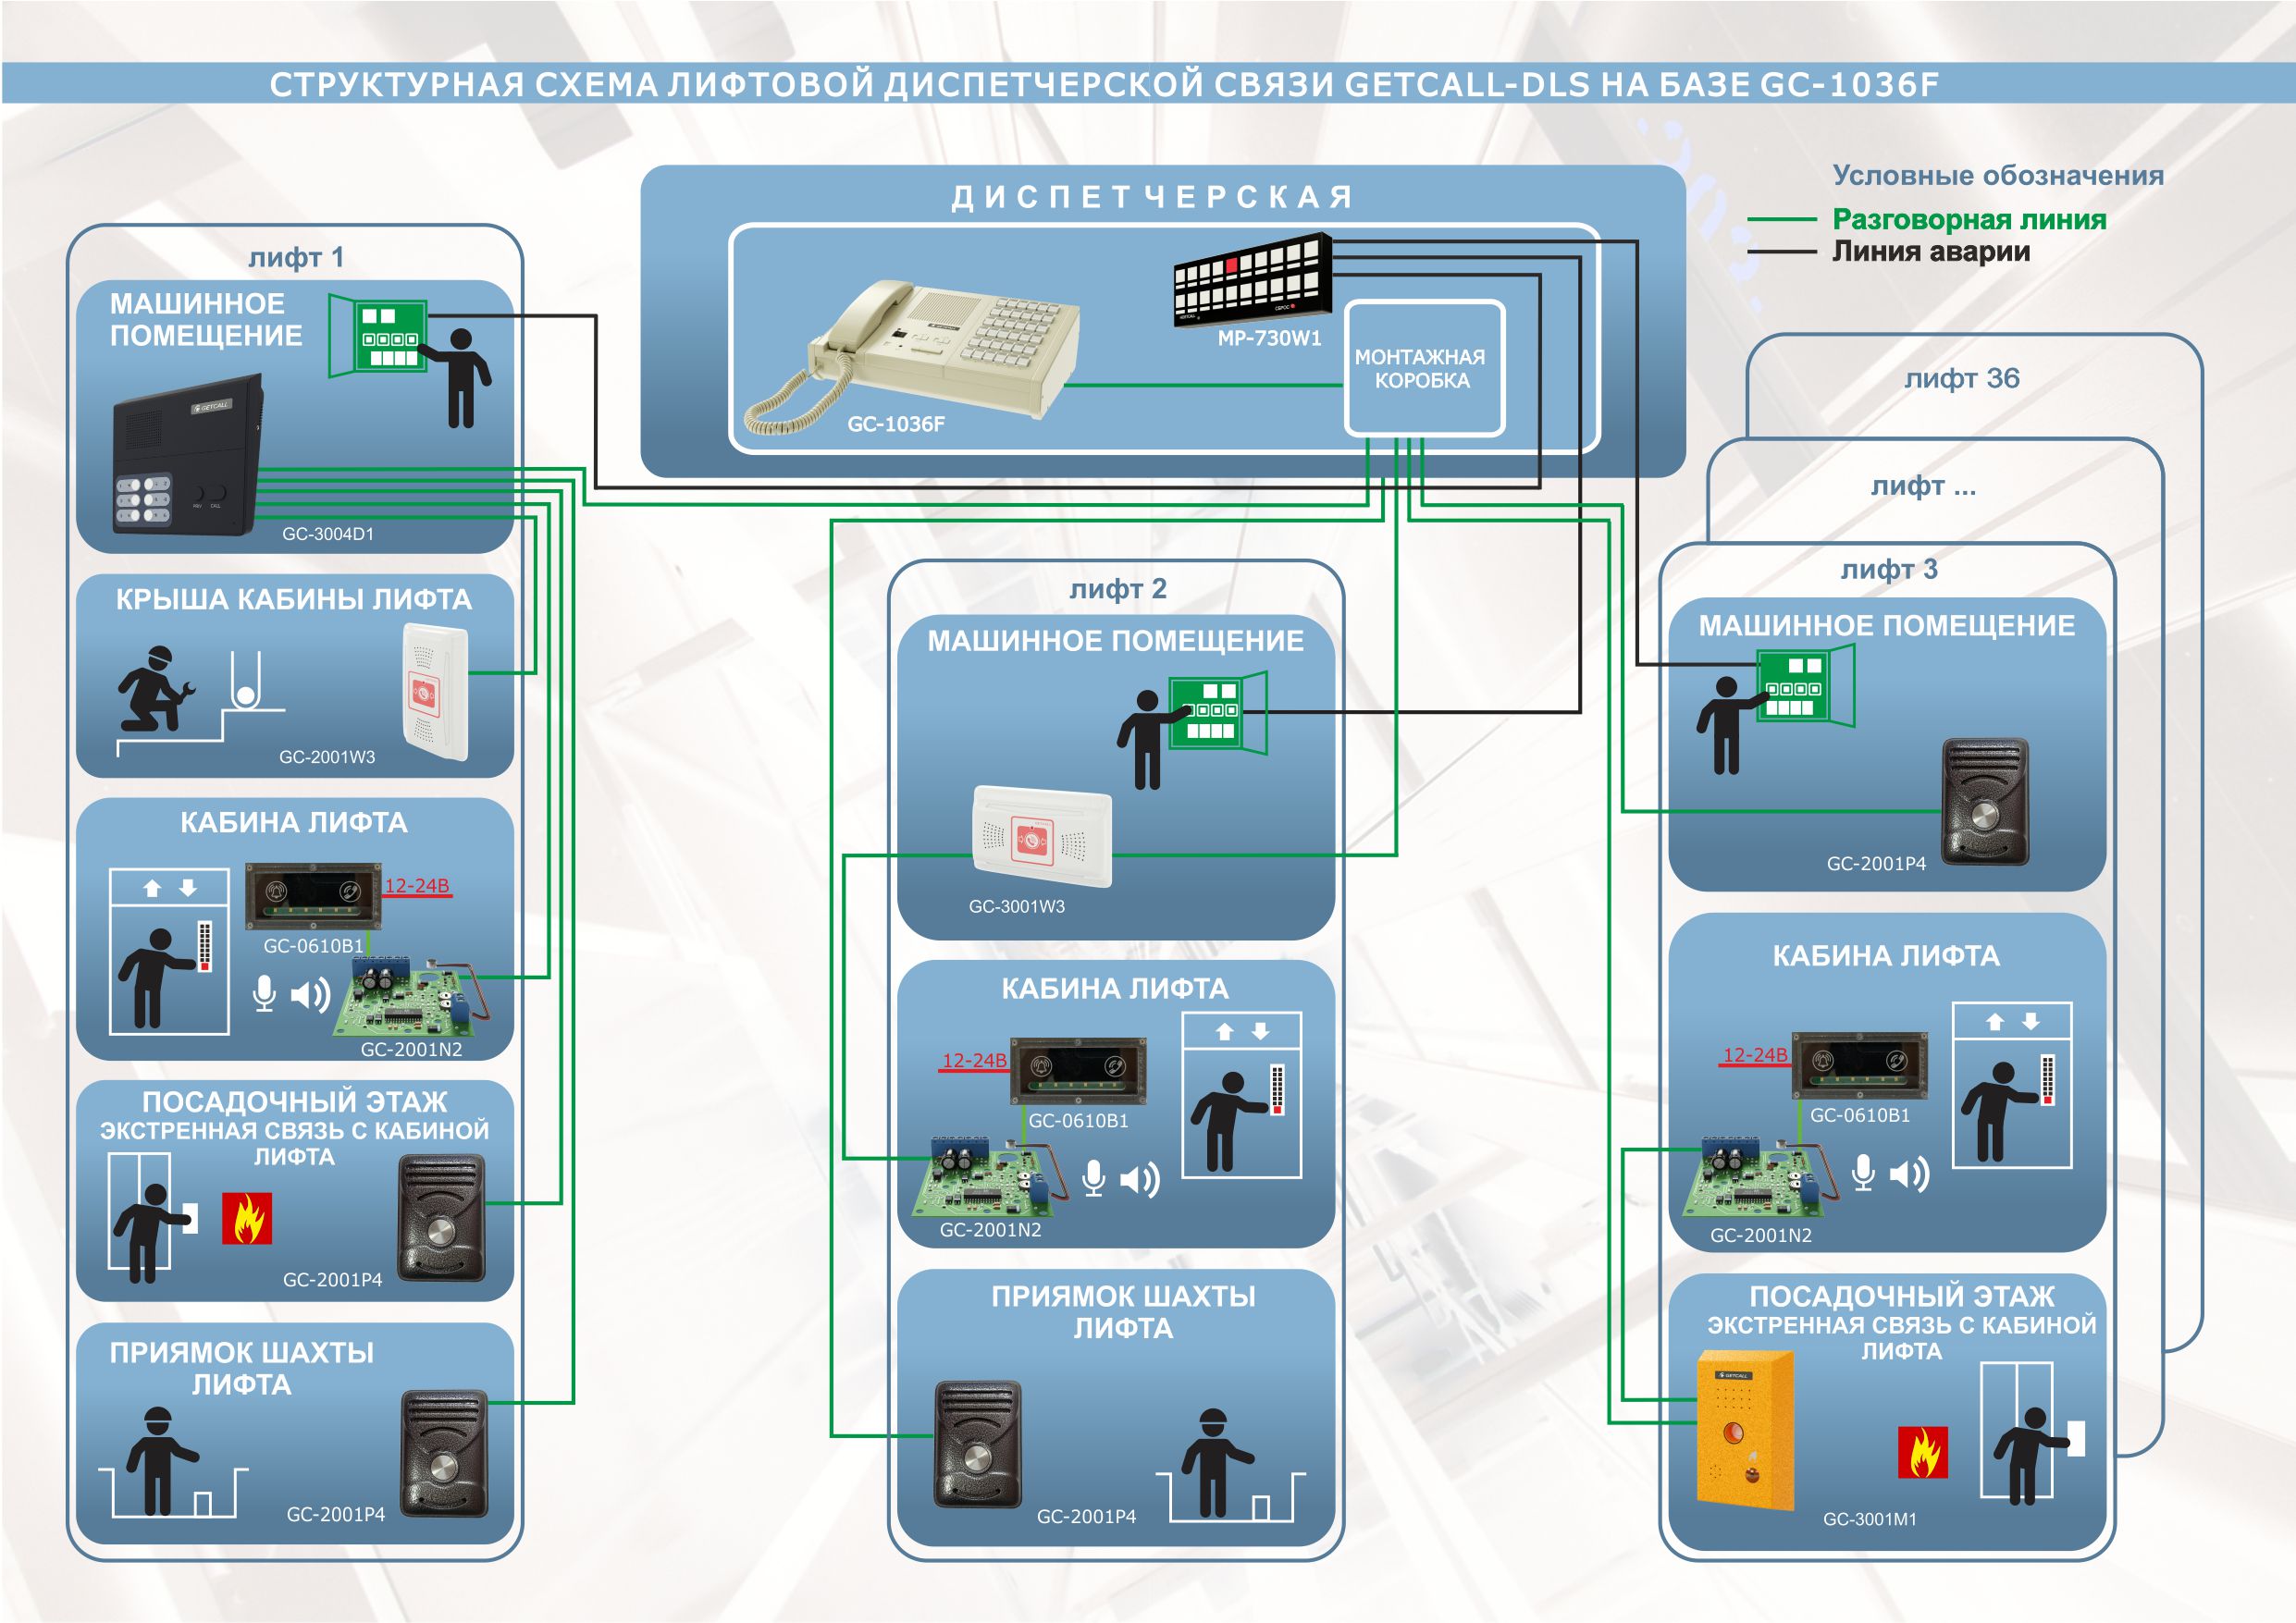 Структурная схема варианте организации лифтовой диспетчерской связи на базе пульта GC-1036F